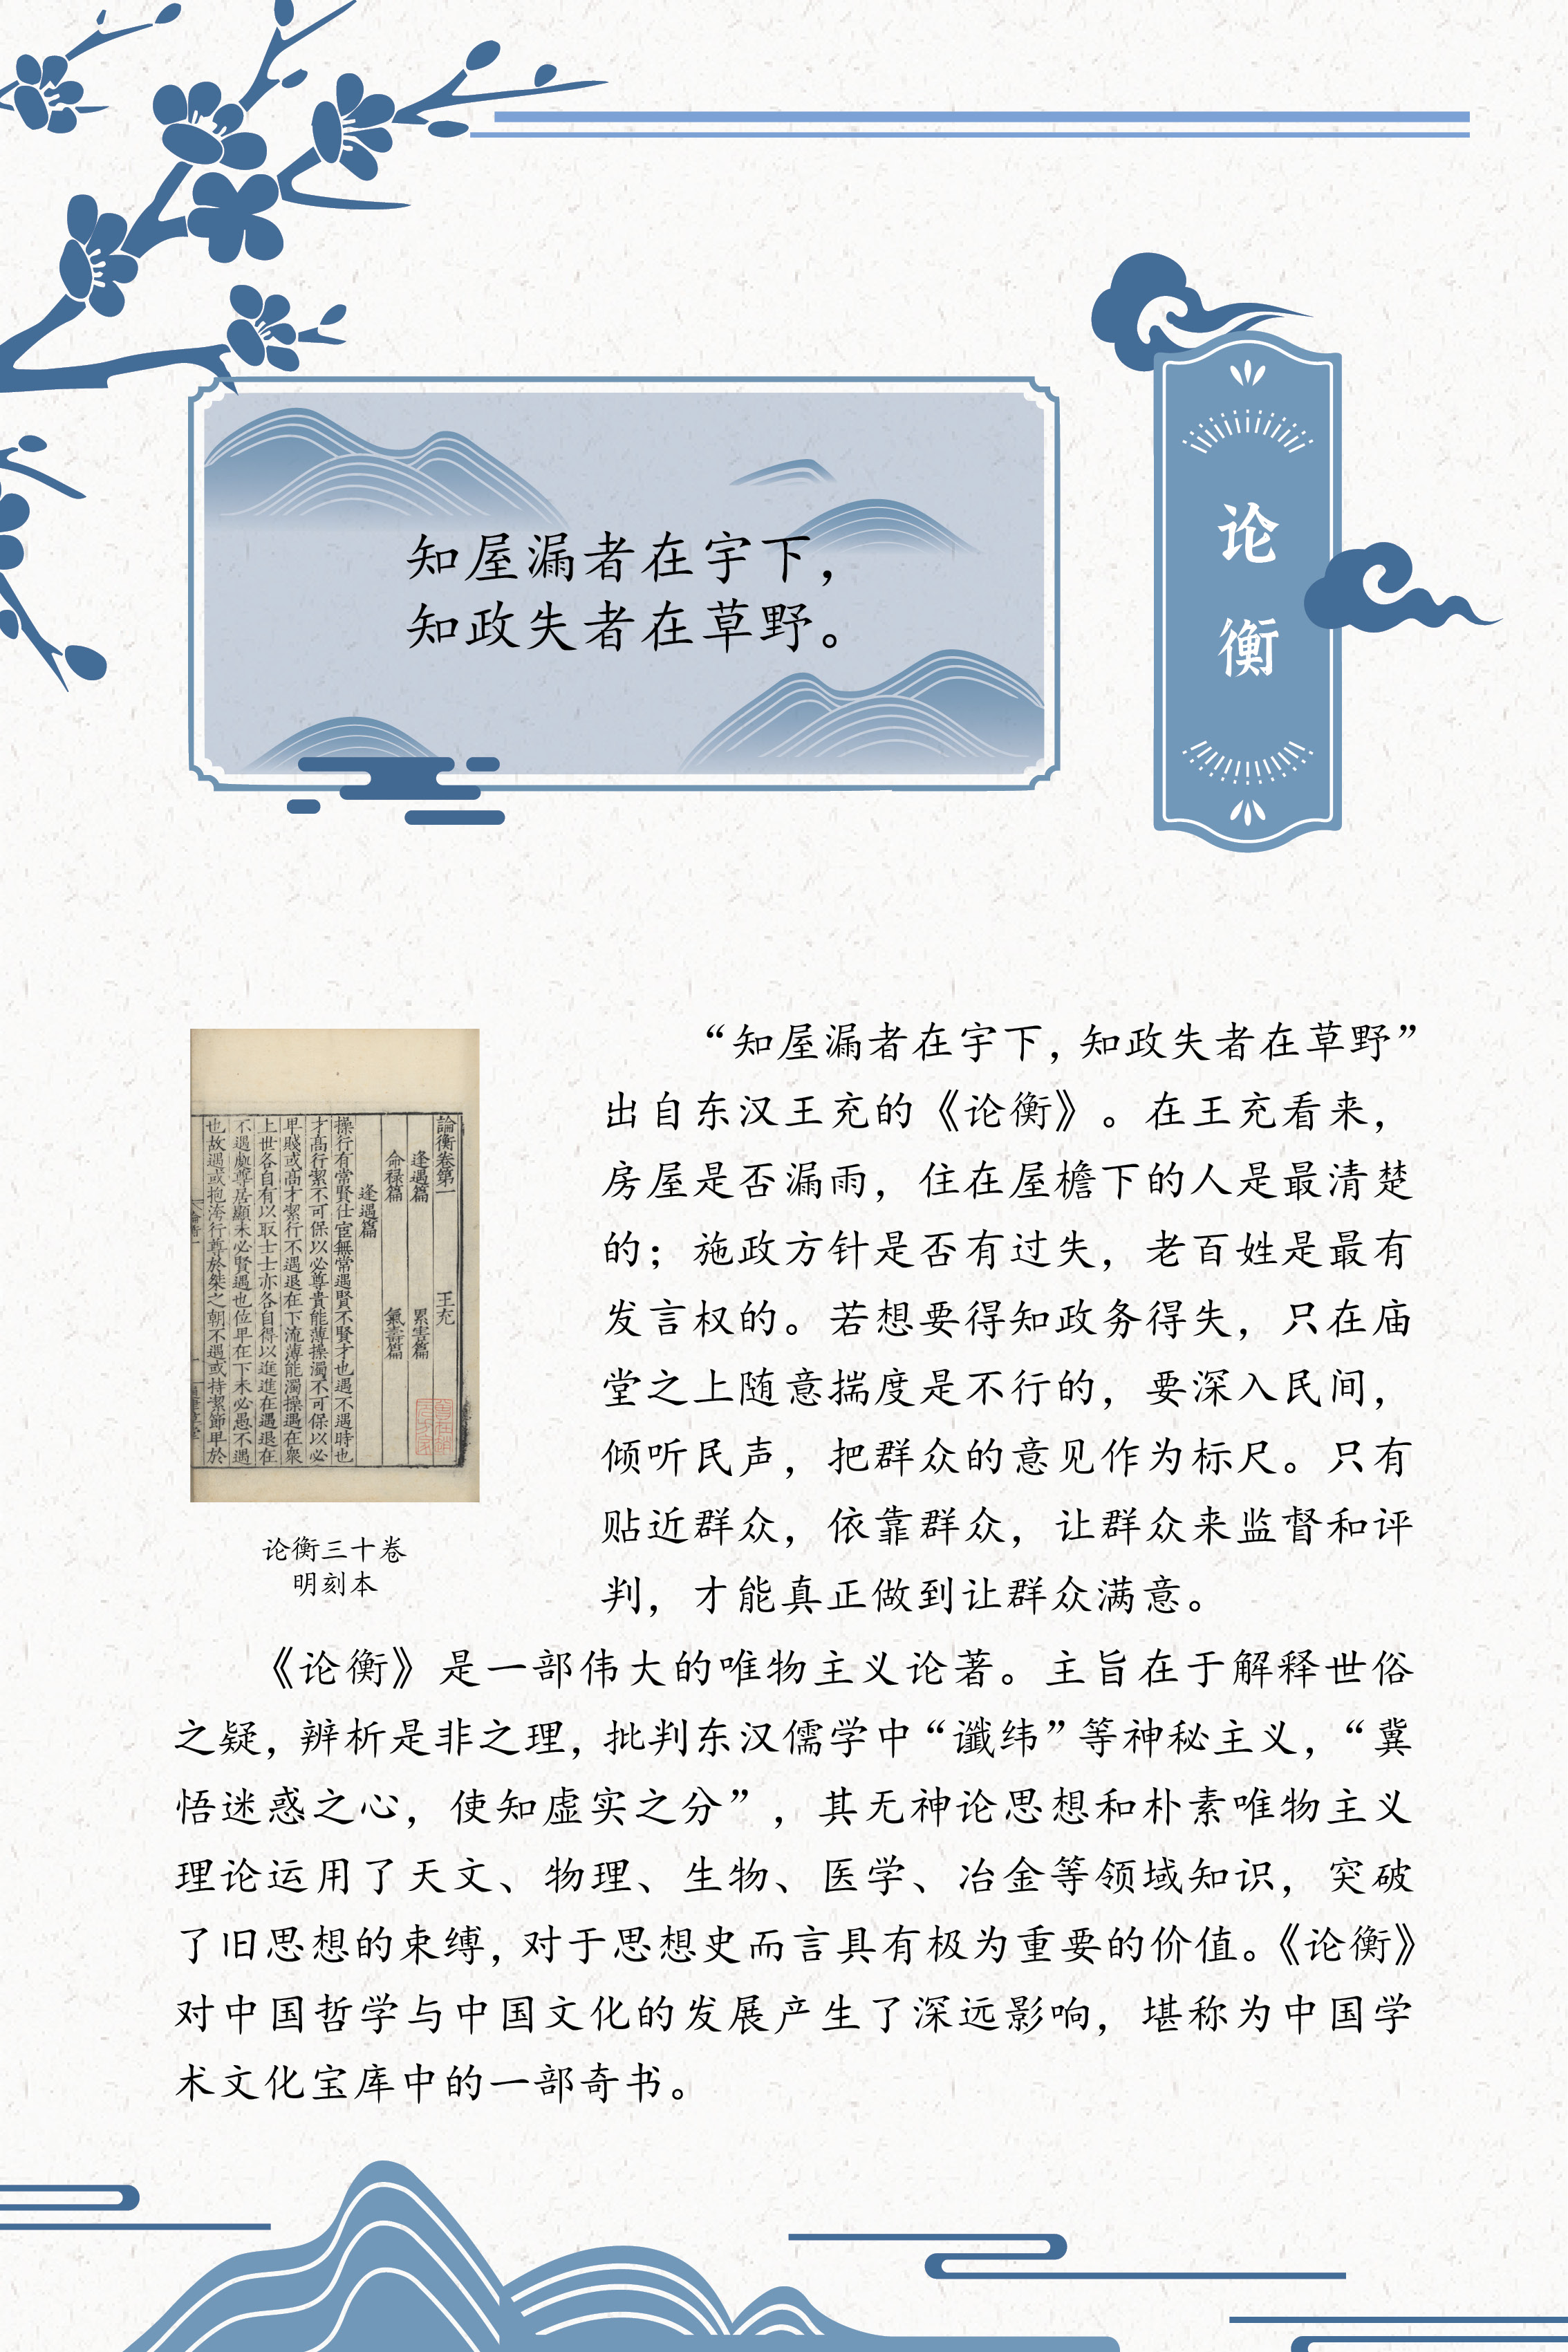 典籍里的中国智慧——《中华传统文化百部经典》阅读推广展_图30